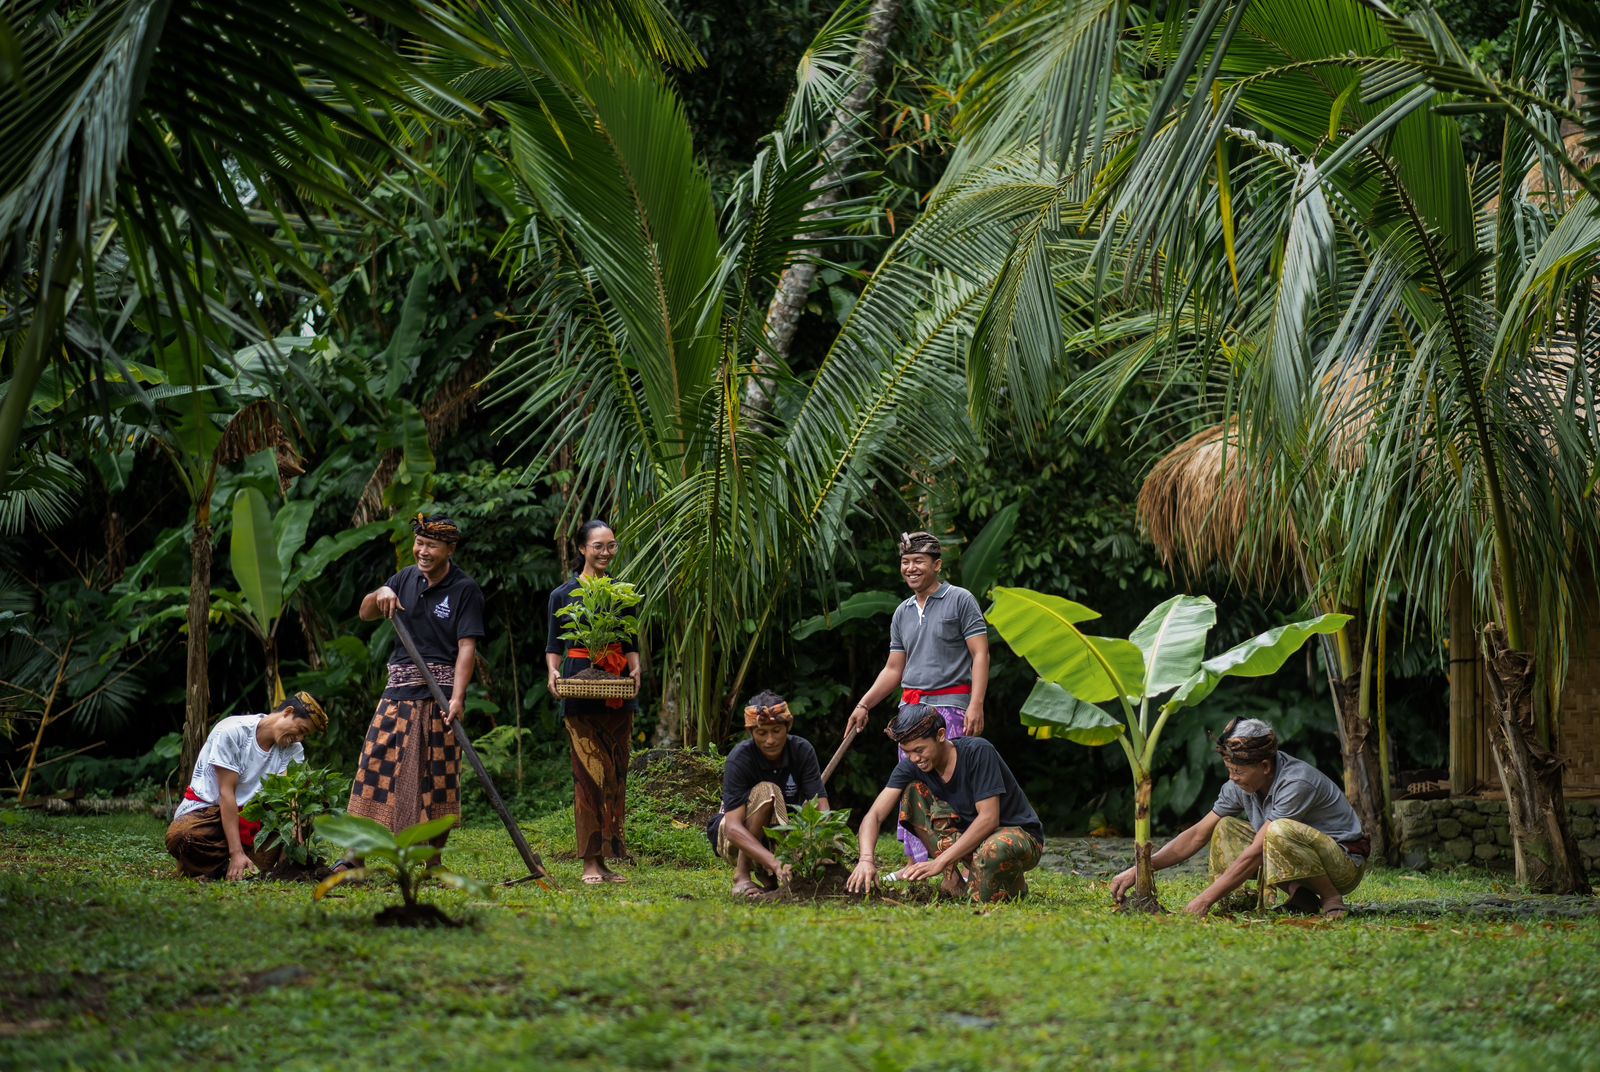 Gandeng Samsara Living Museum, Hotel Mewah di Bali Luncurkan ‘Sustainable Agriculture’